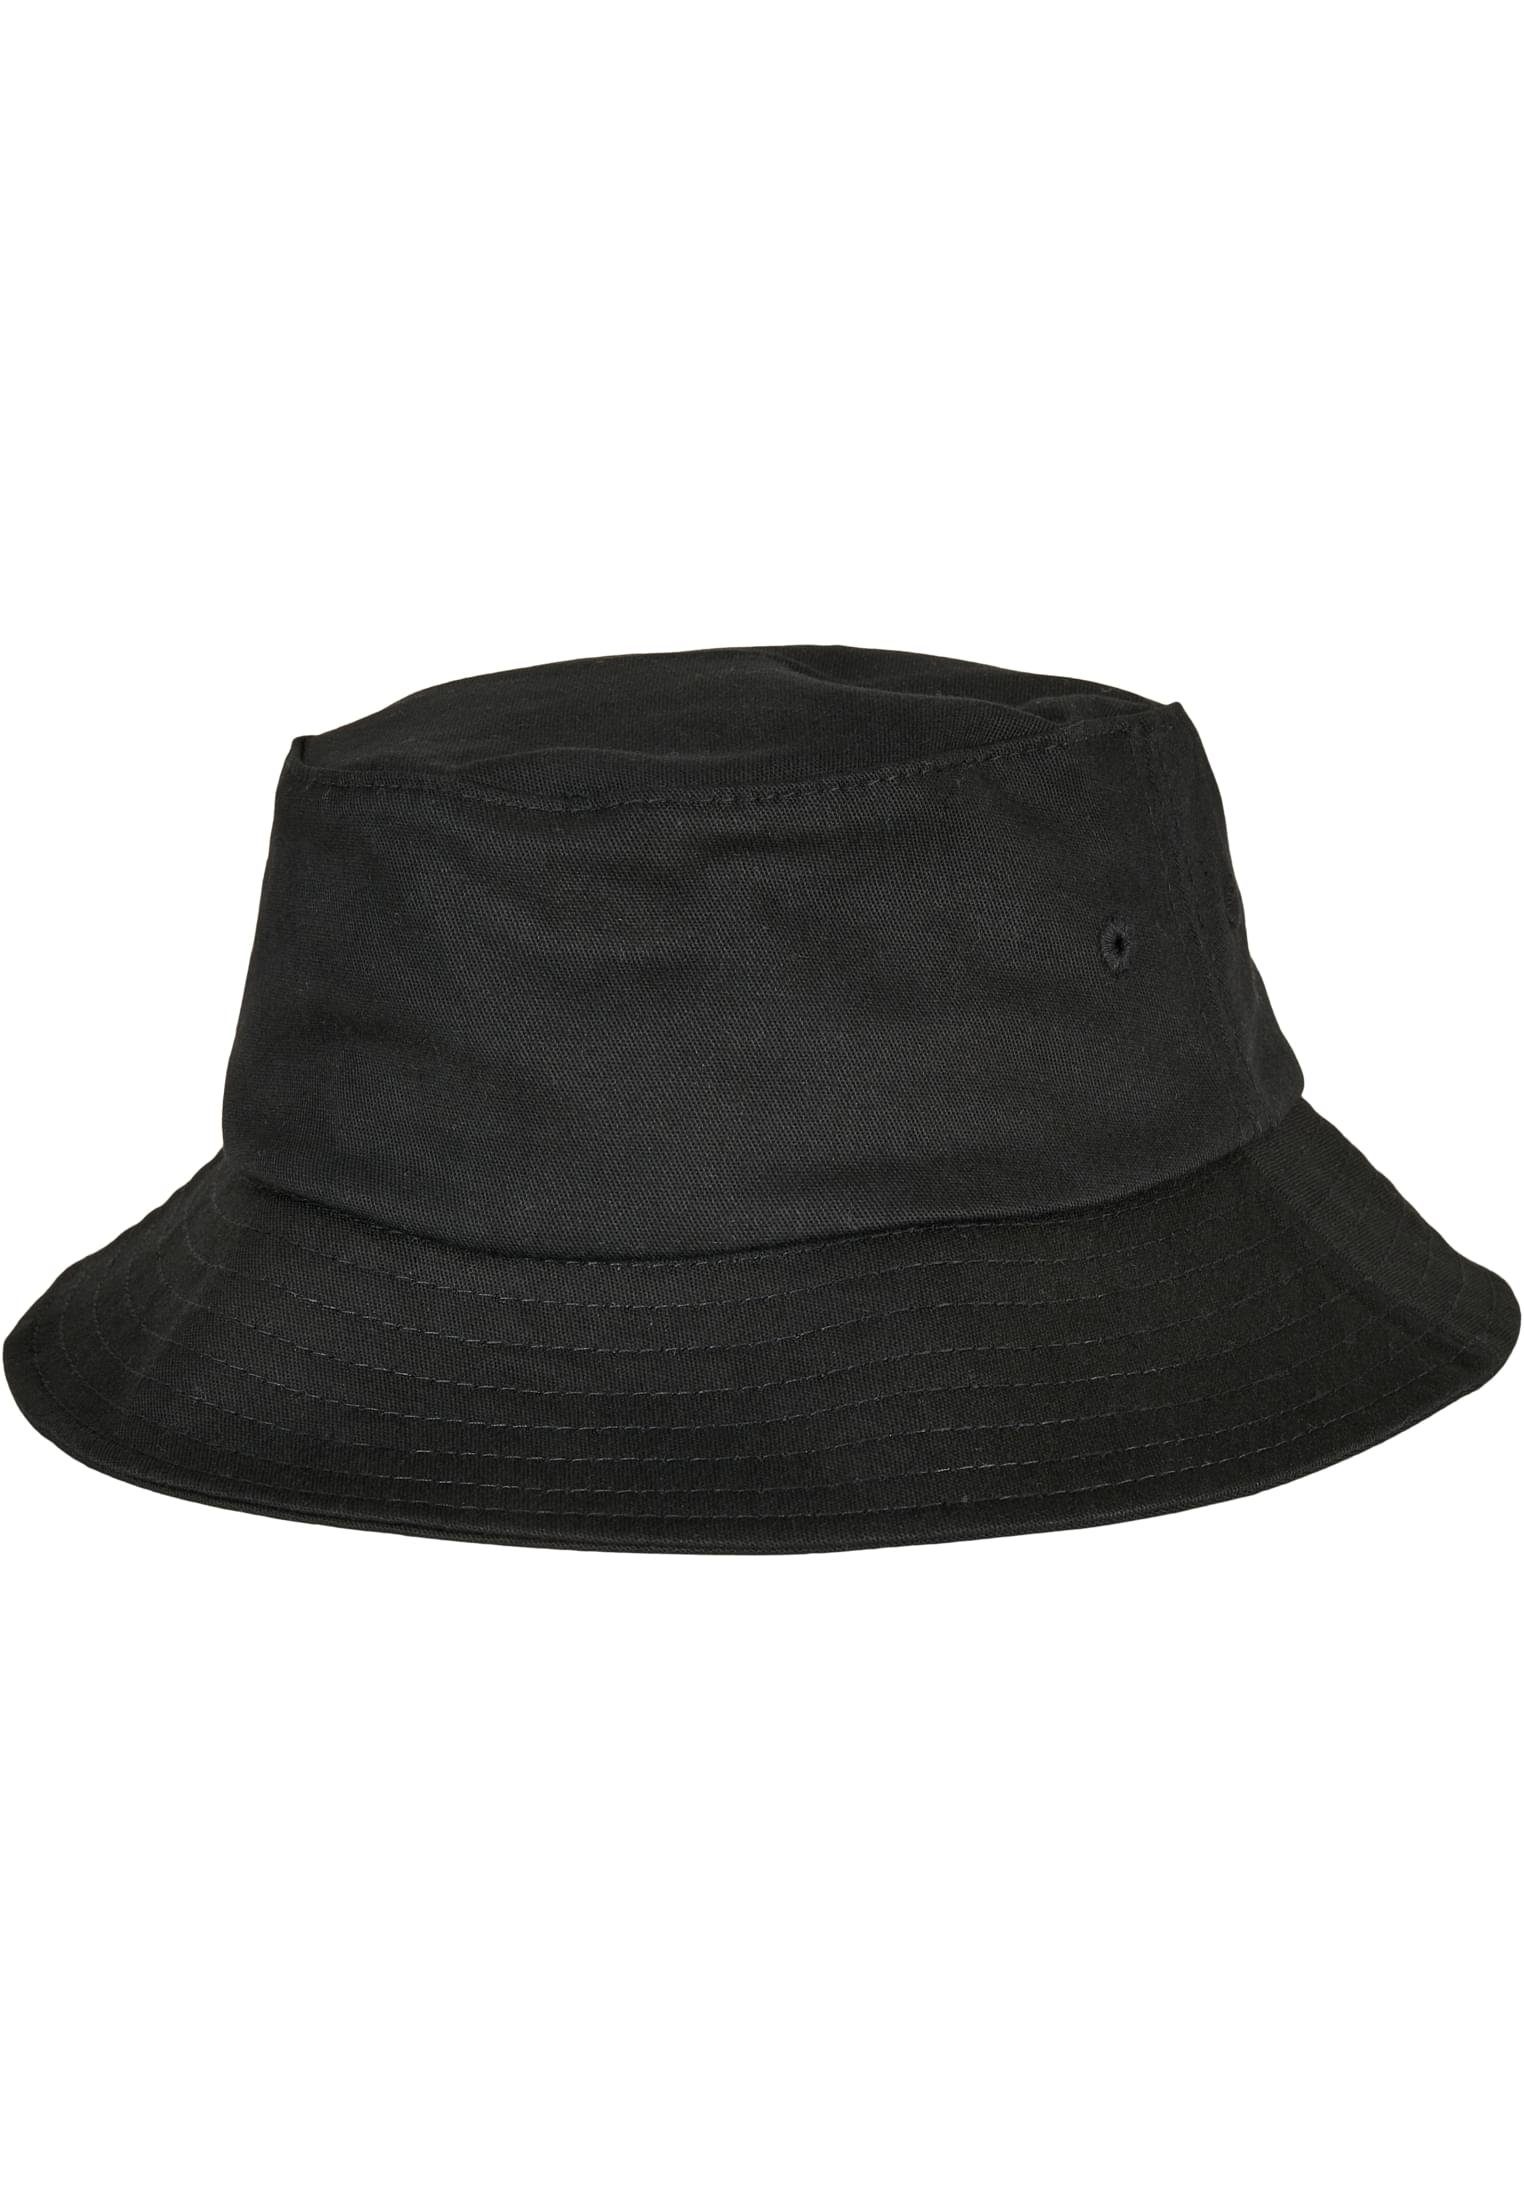 Bucket Hat Twill Flex black Accessoires Flexfit Cotton Cap Kids Flexfit